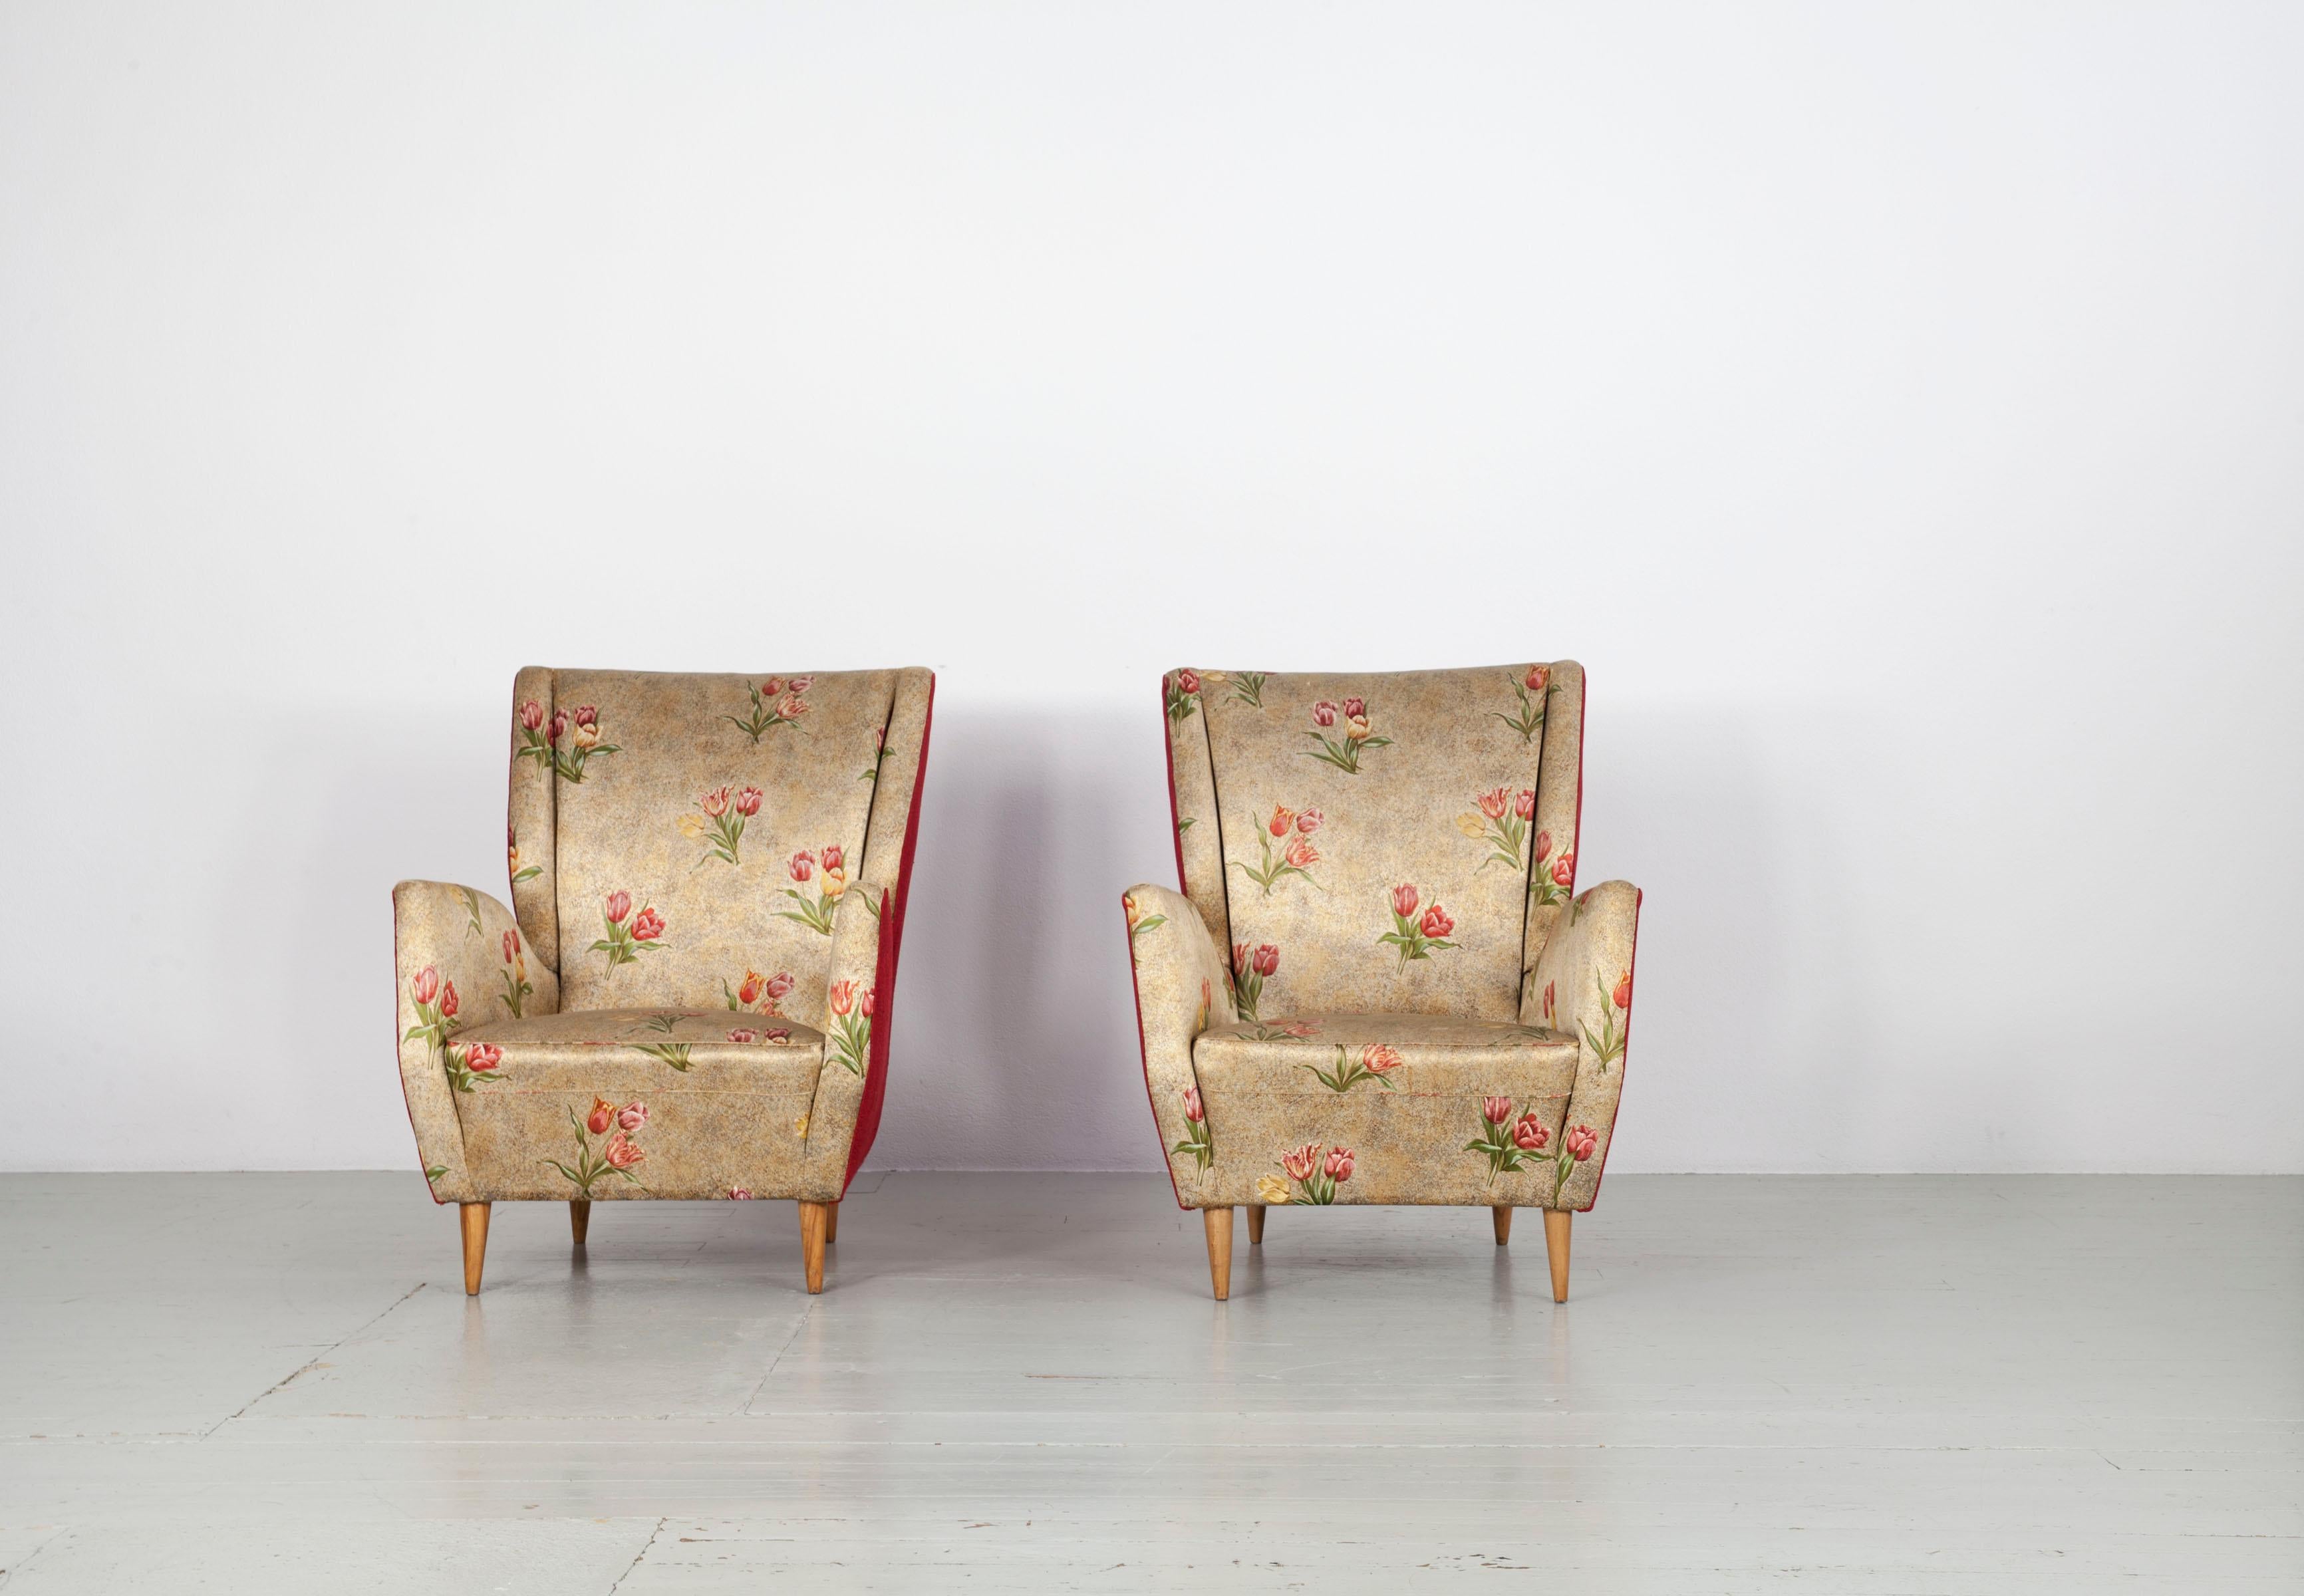 Italienisches Sesselpaar aus den 1950er Jahren mit konischen Holzbeinen und originalen Stoffbezügen. Die Stühle sind in gutem, authentischem Vintage-Zustand. Der Schaumstoff ist nur ein wenig durchgescheuert.